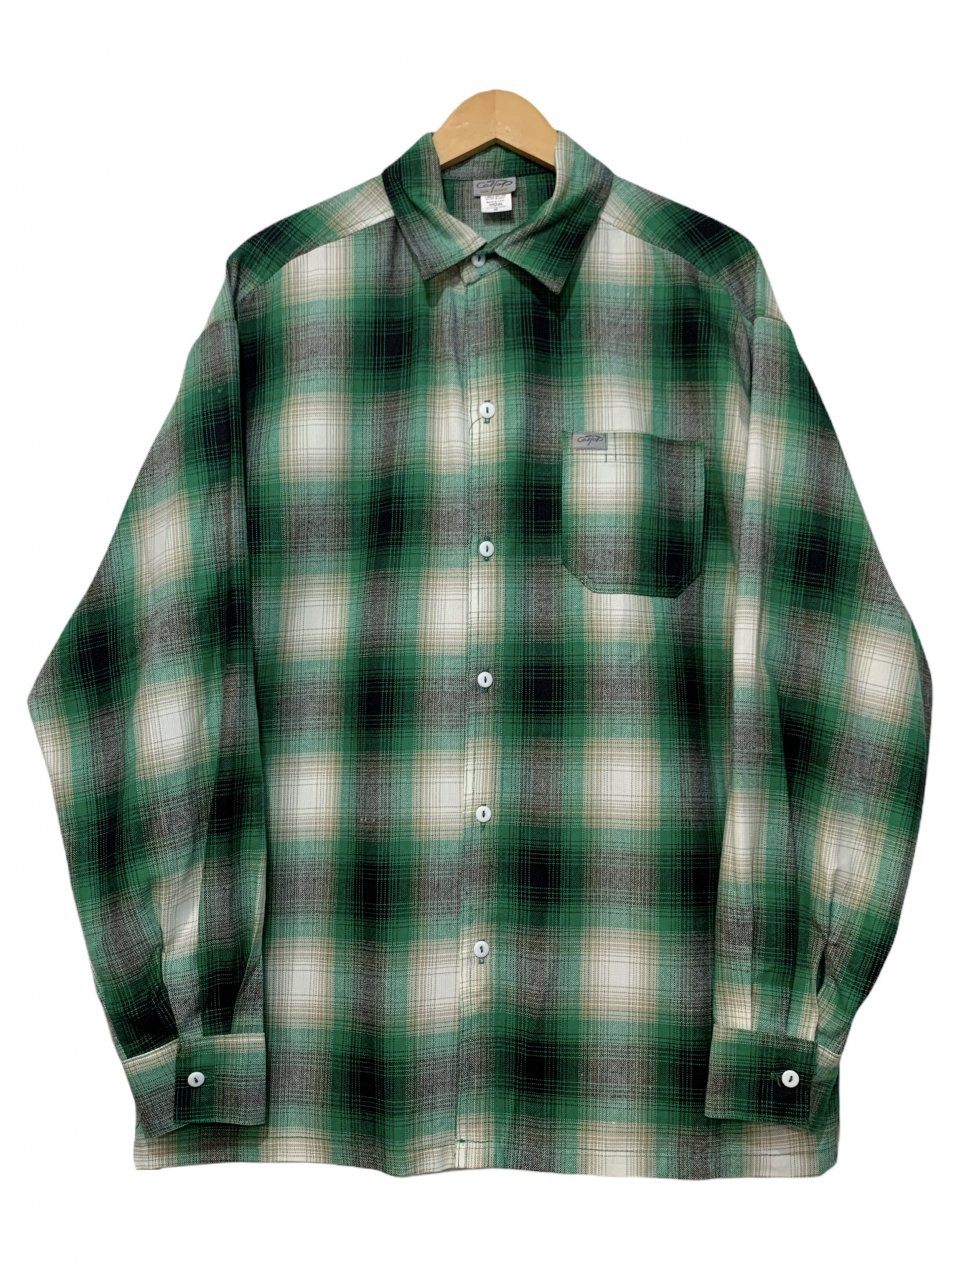 新品 CALTOP Ombre Check L/S Shirt (GREEN) キャルトップ 長袖 チェックシャツ オンブレチェック シャドーチェック  緑 グリーン カルトップ - NEWJOKE ONLINE STORE